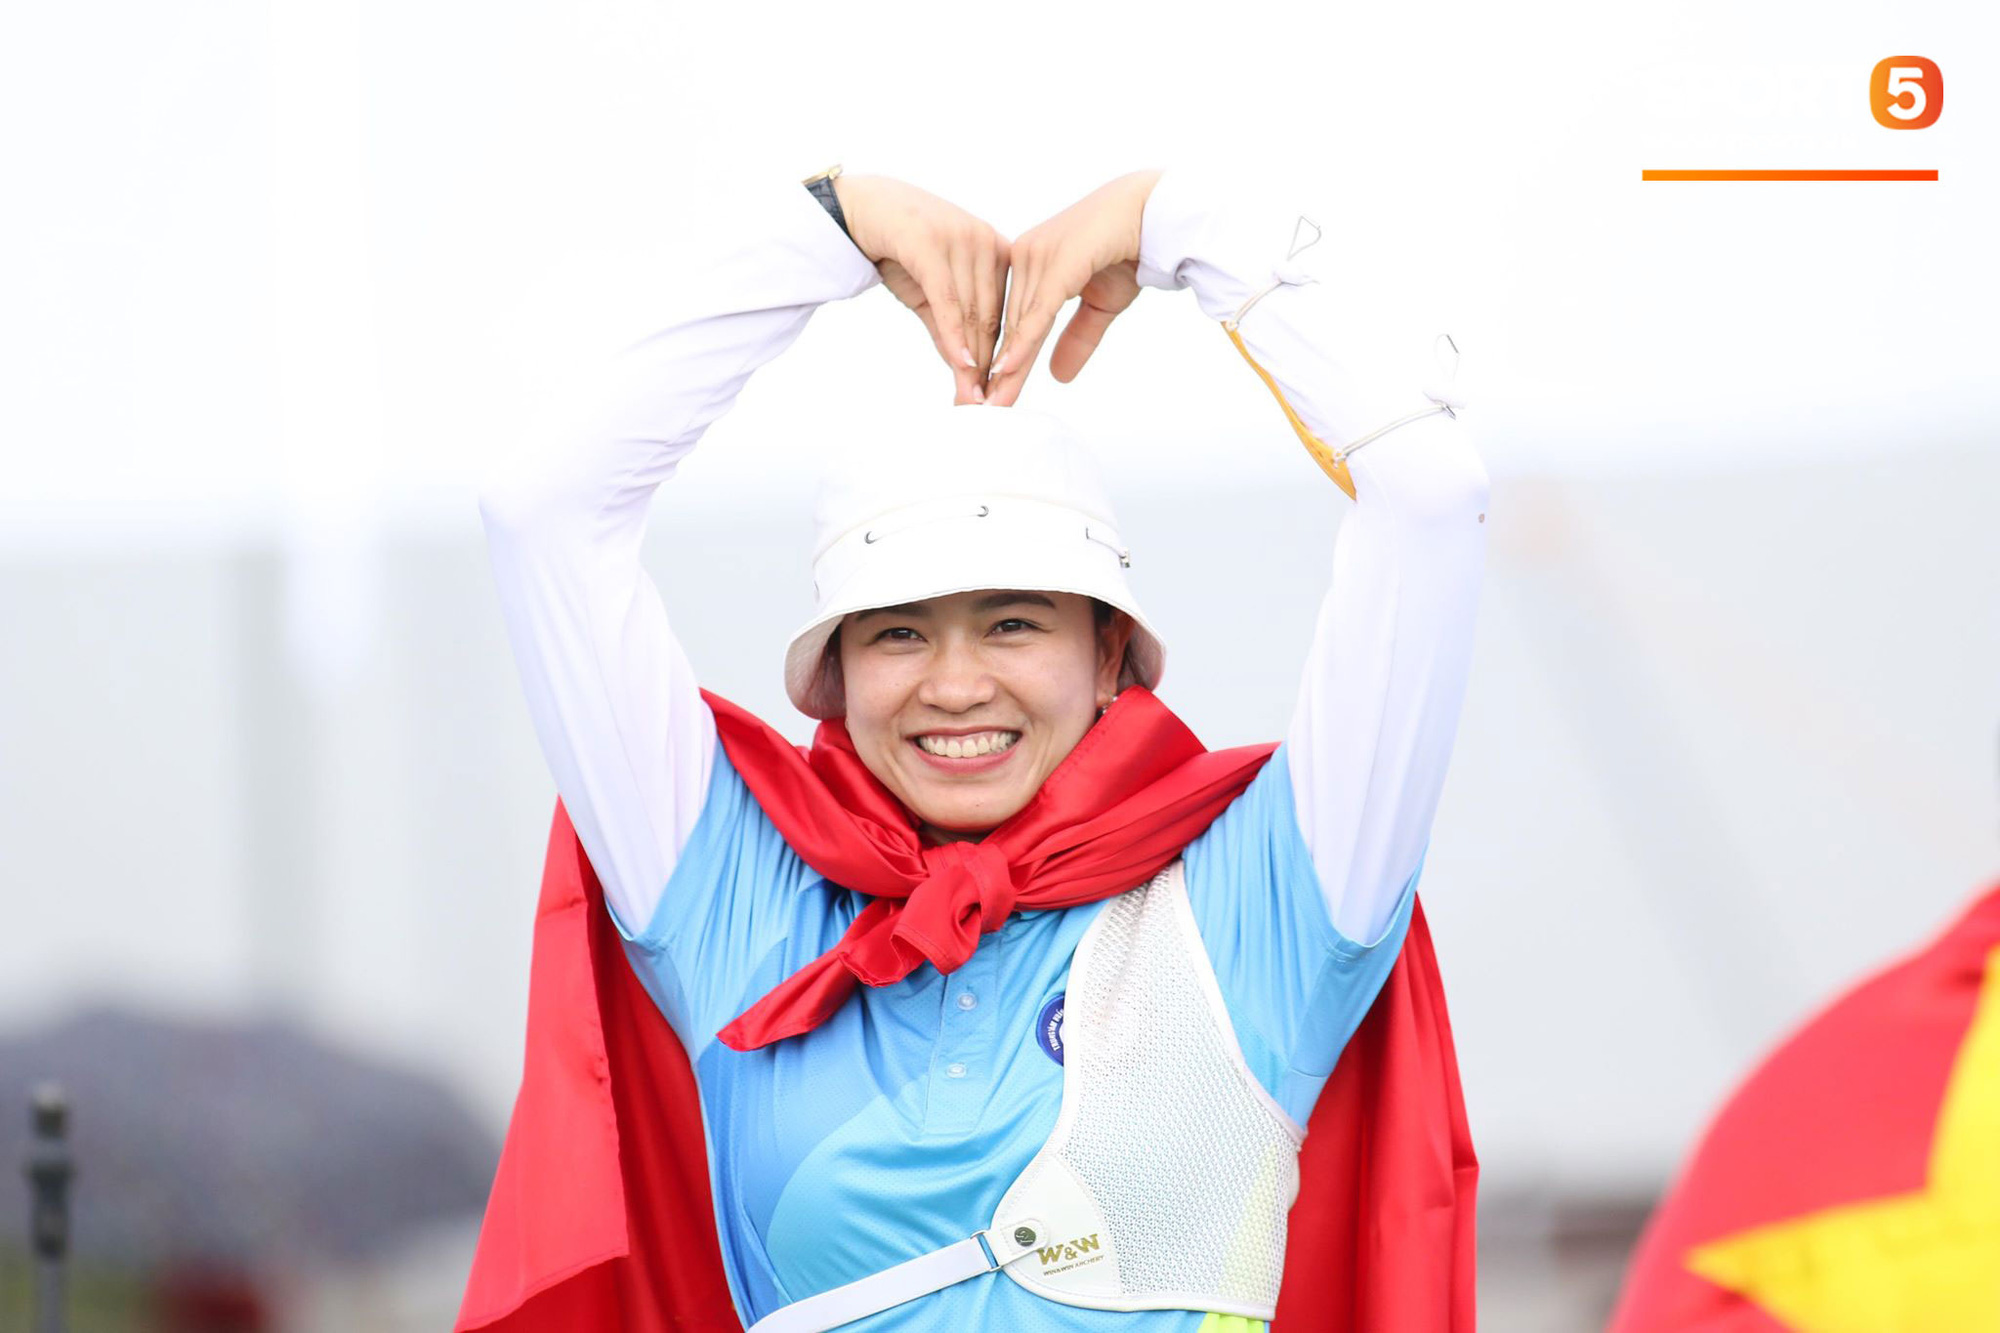 SEA Games ngày 8/12: Nữ hoàng điền kinh Tú Chinh vượt 2 VĐV nhập tịch trong tích tắc, xuất sắc giành HCV chung cuộc - Ảnh 48.